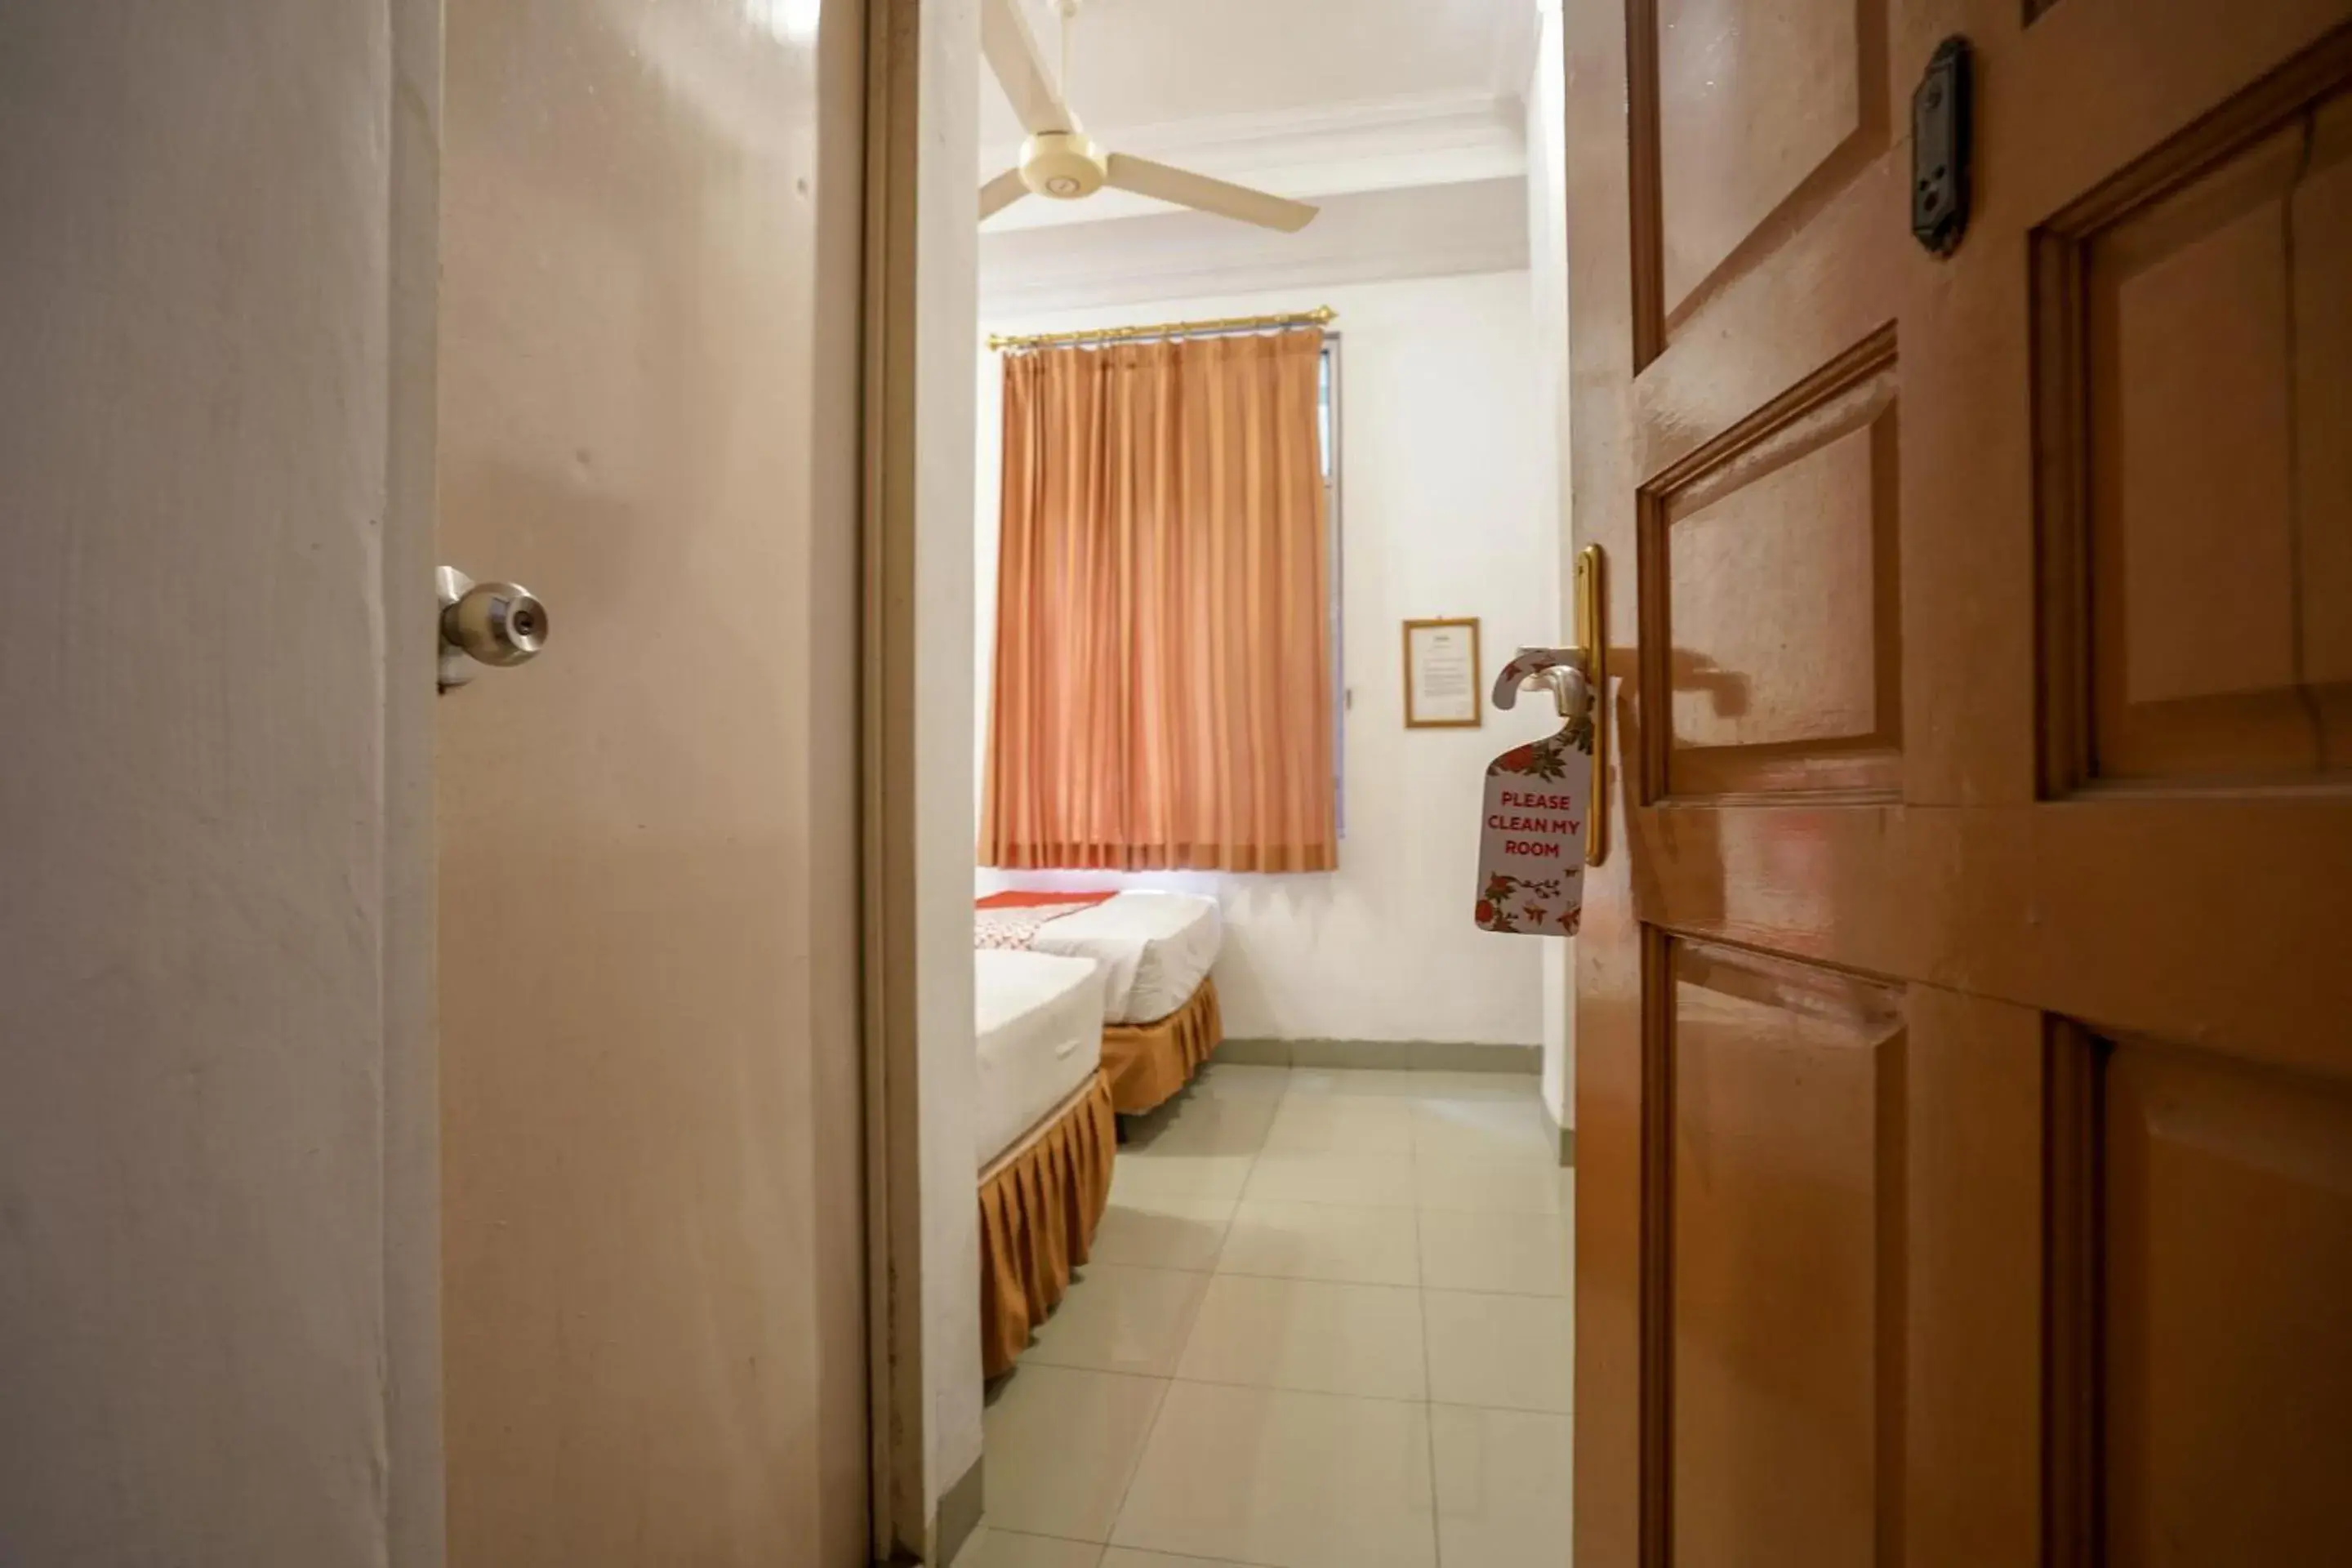 Bedroom, Bathroom in OYO 1173 Hotel Shofa Marwah